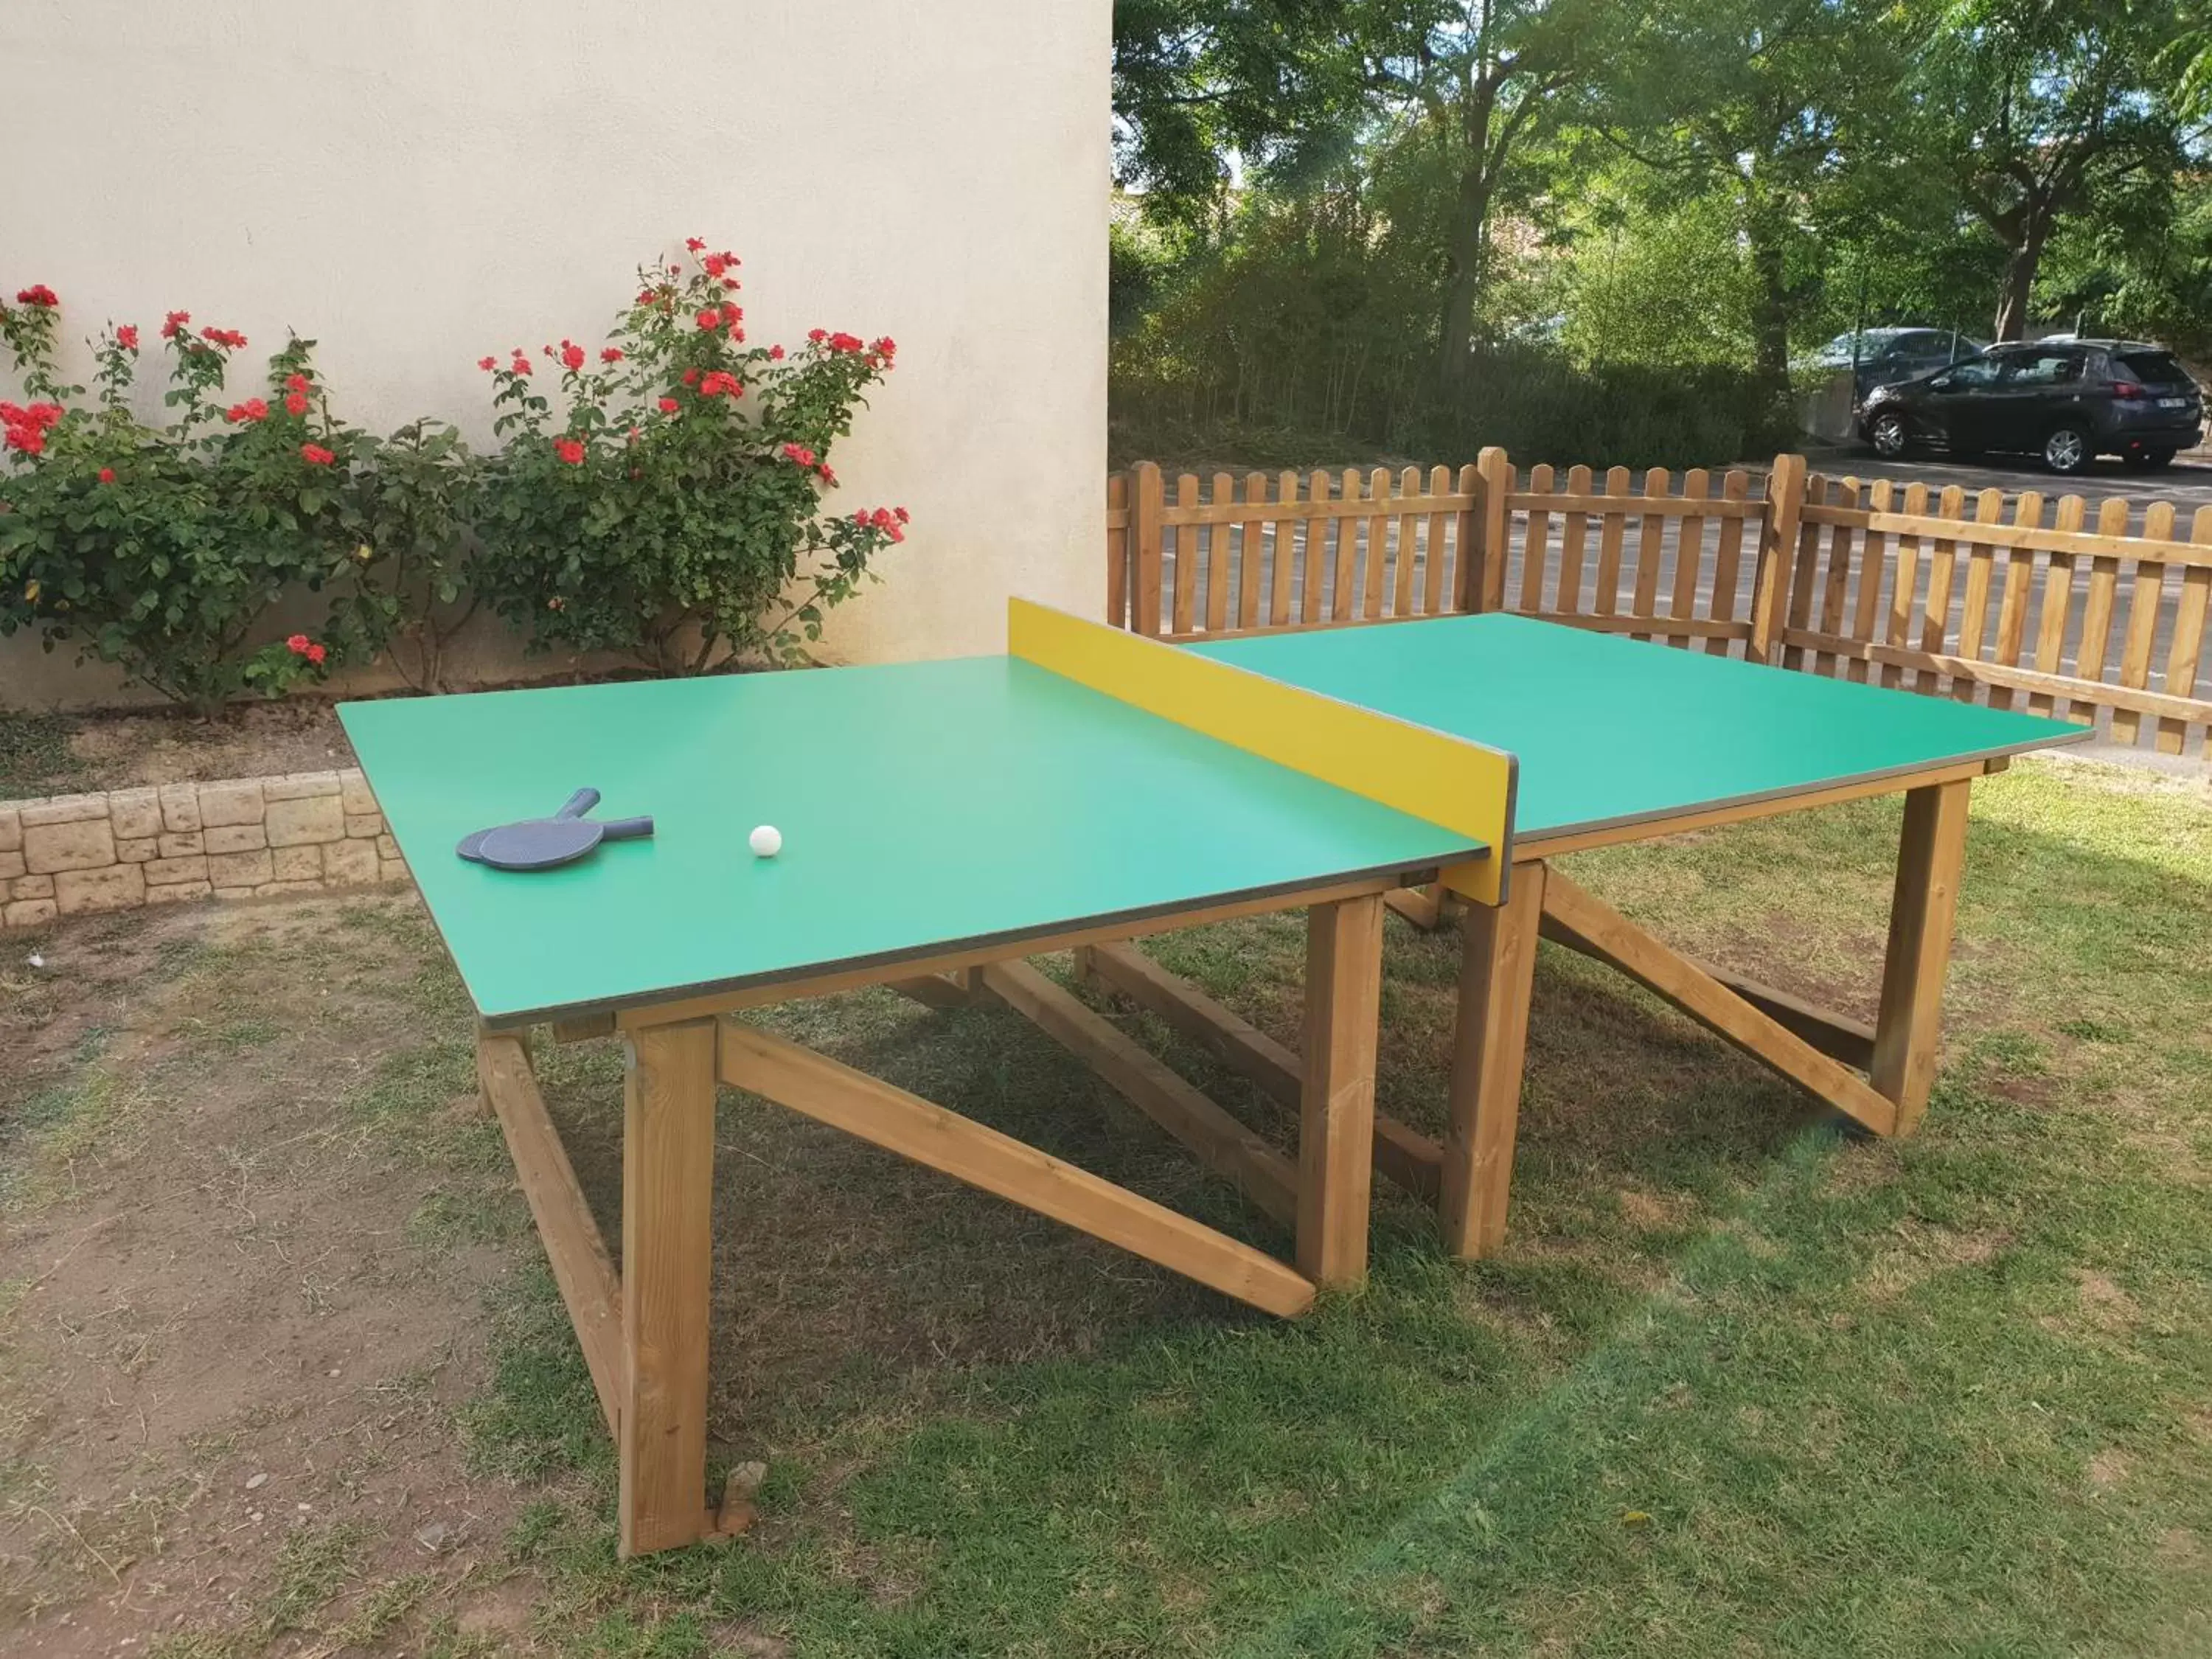 Table Tennis in ibis Styles Carcassonne La Cité